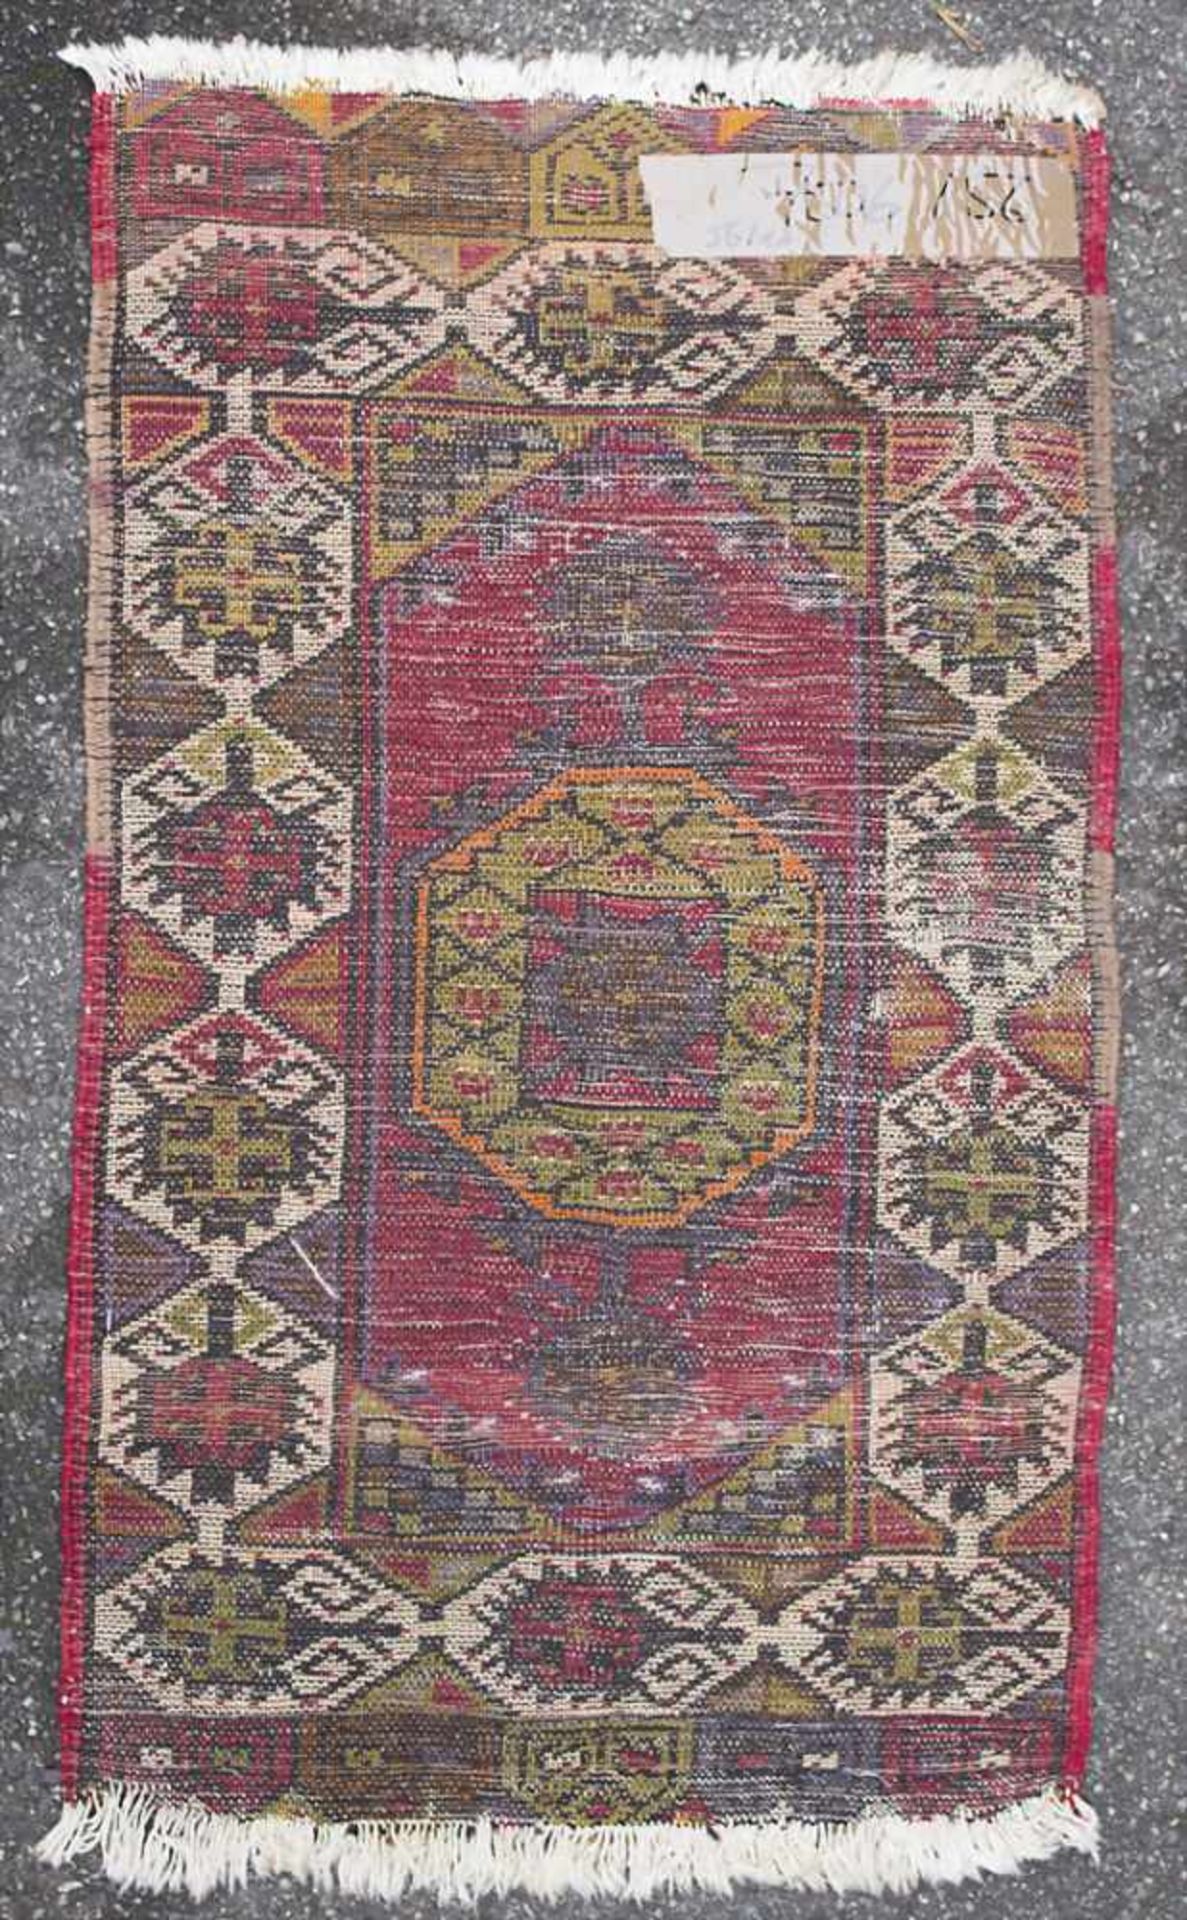 Orientteppich / An oriental carpetMaterial: Wolle auf Baumwolle, Maße: 88 x 49 cm, Zustand: gut, - Image 2 of 3